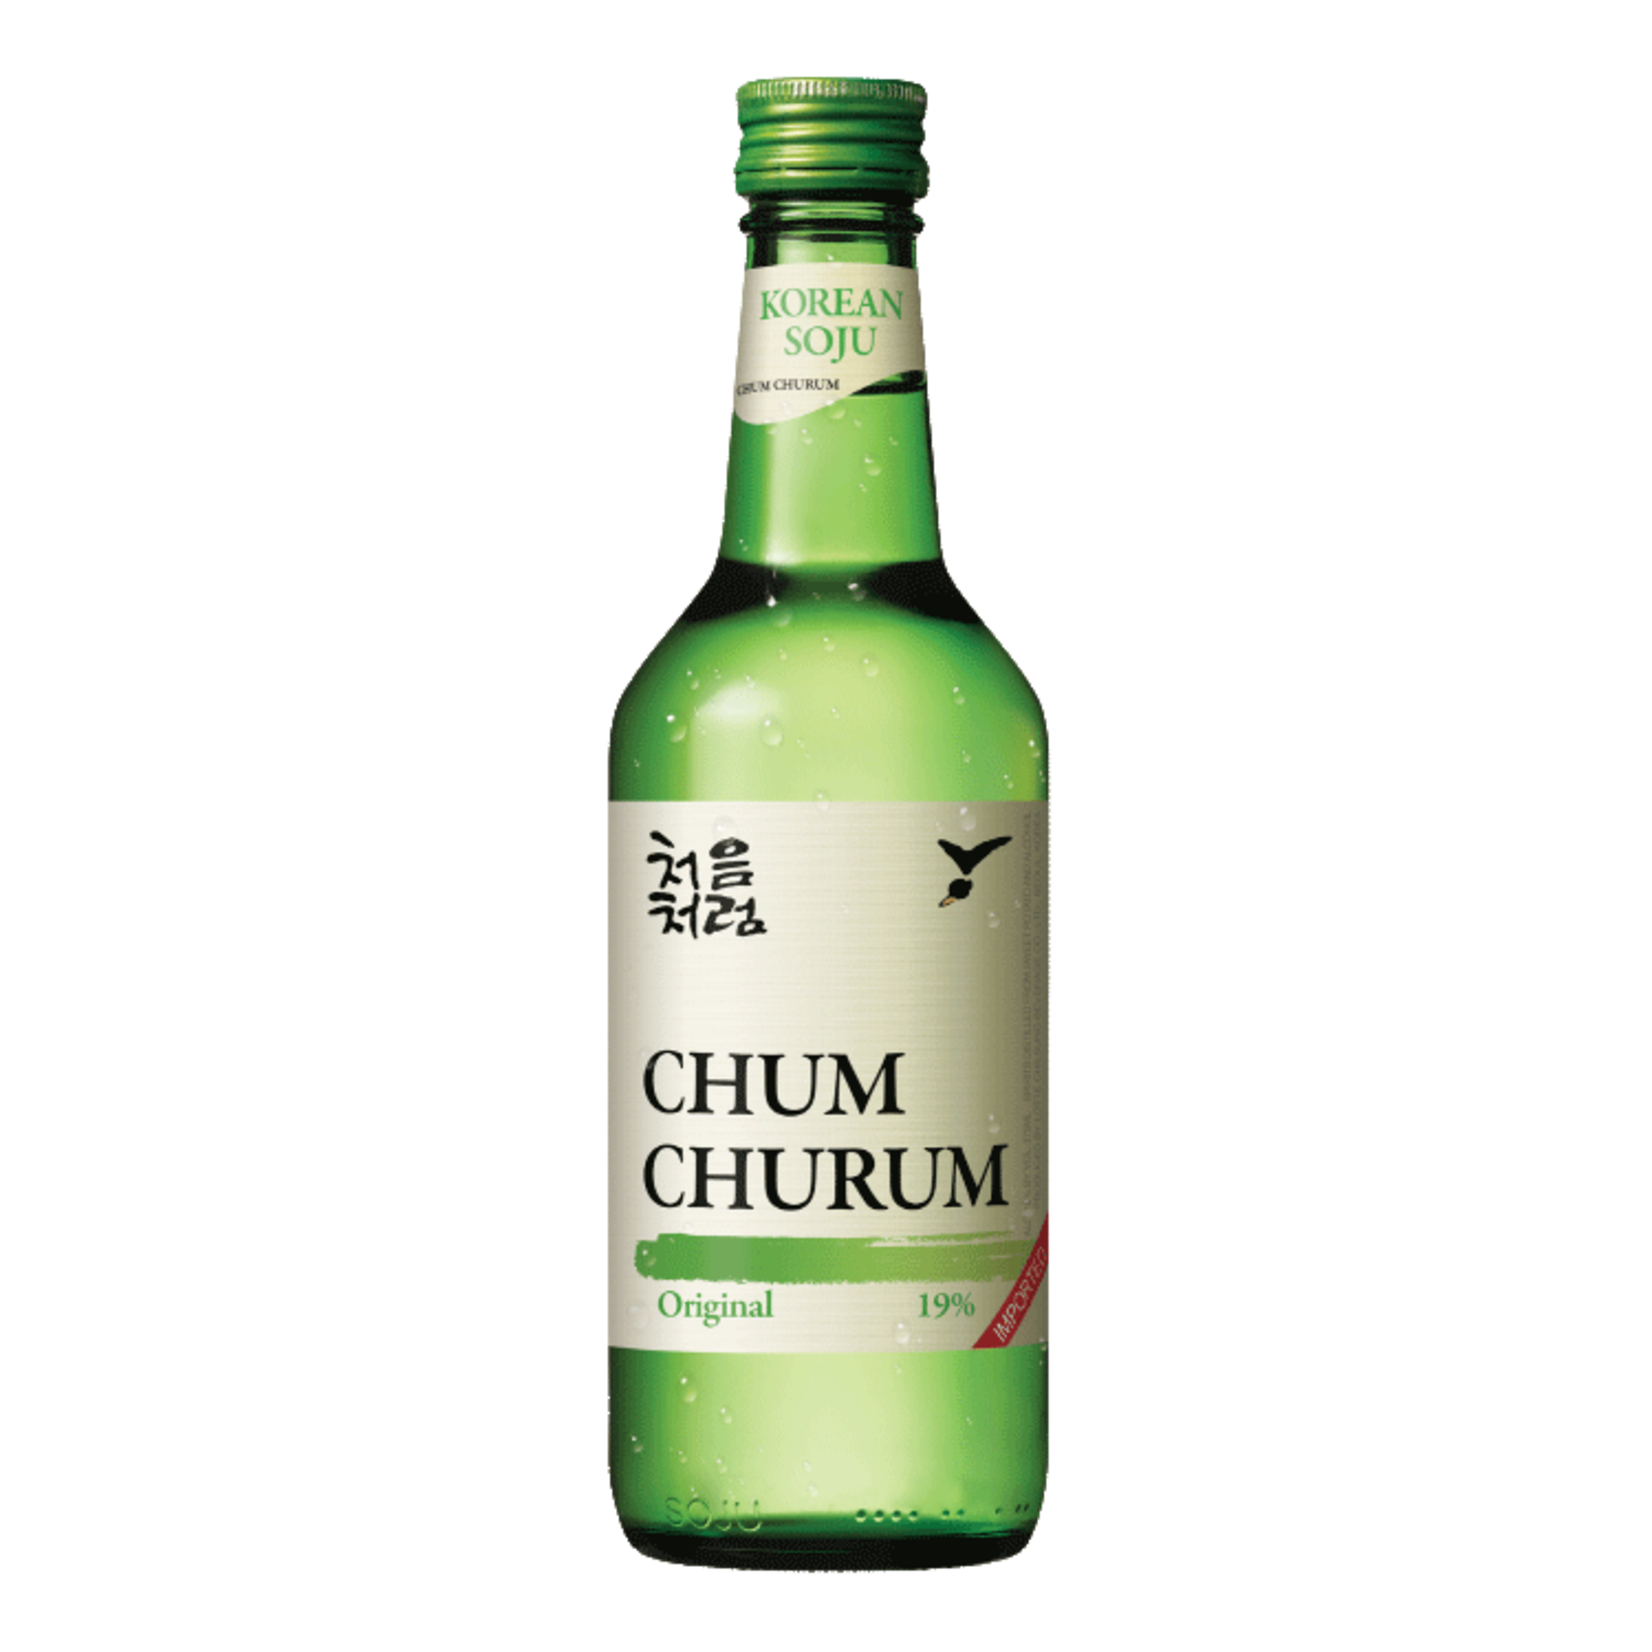 Spirits Chum Churum Rich Korean Soju